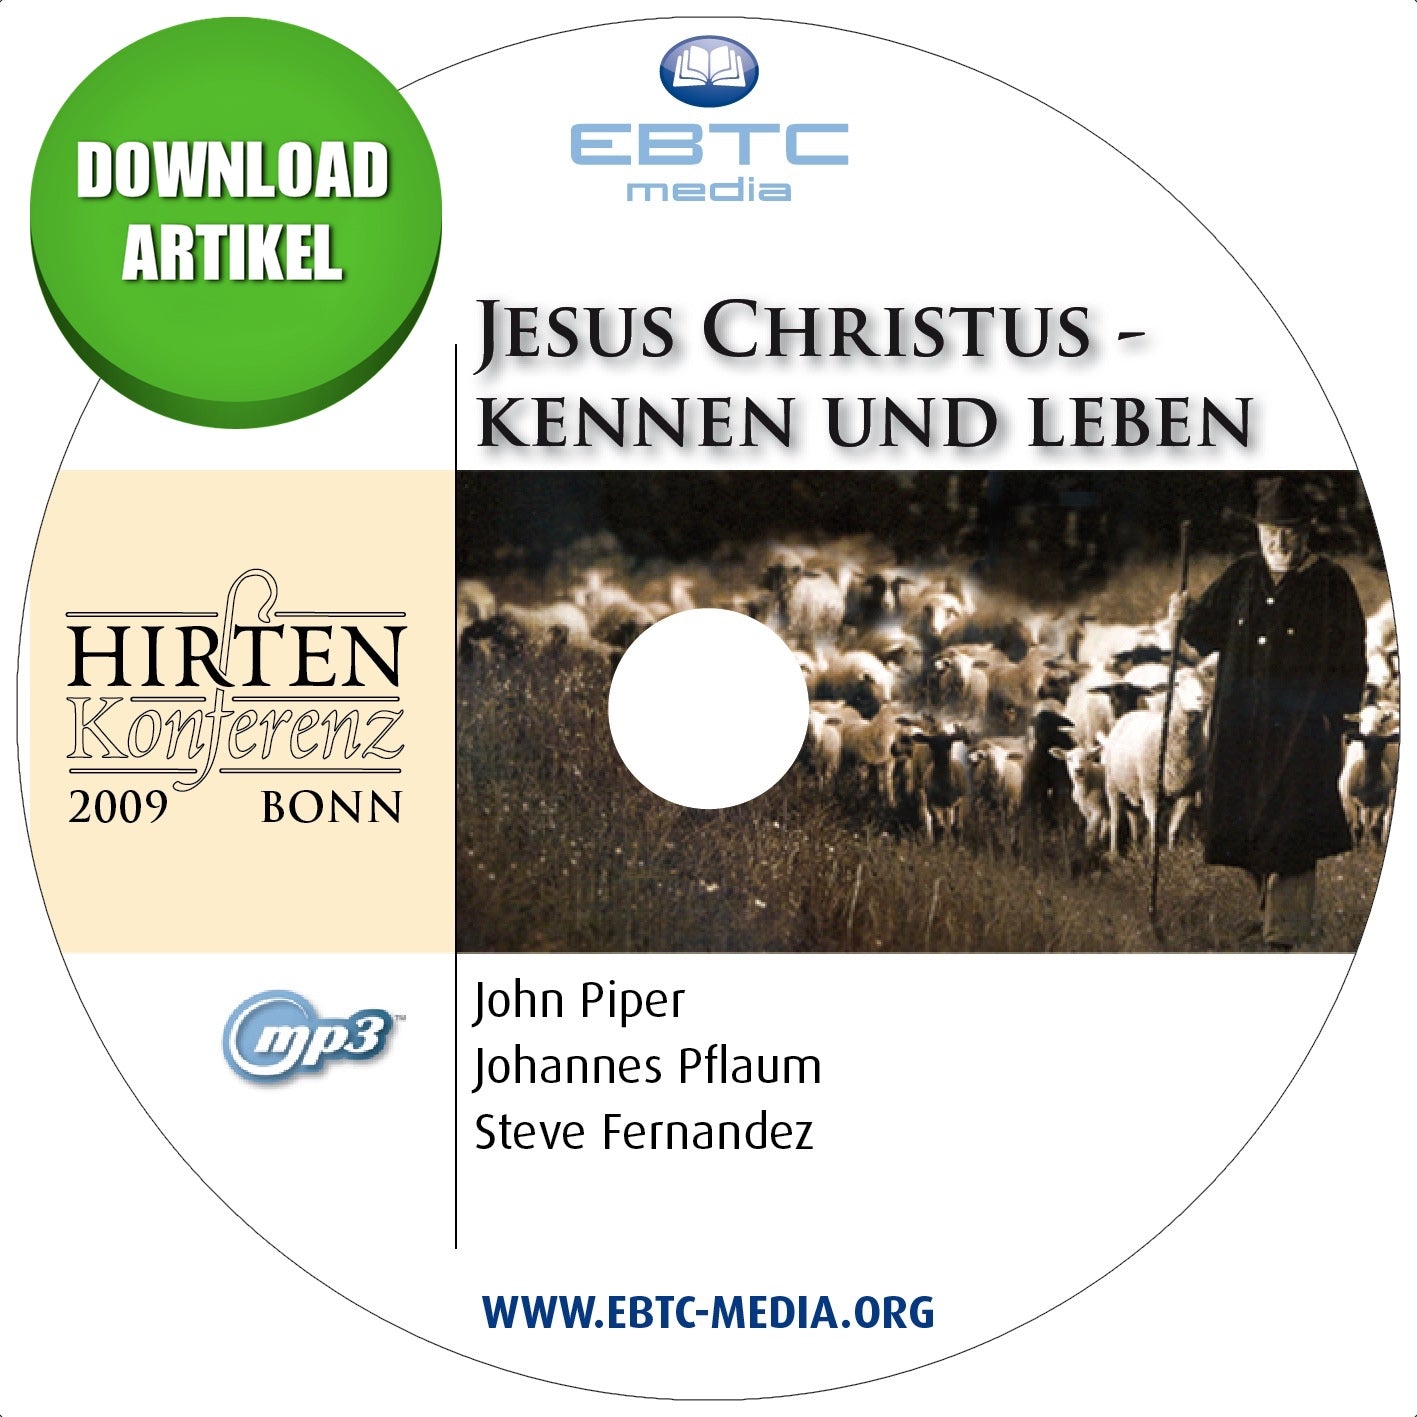 Hirtenkonferenz 2009 - Jesus Christus kennen und leben (MP3-Download)